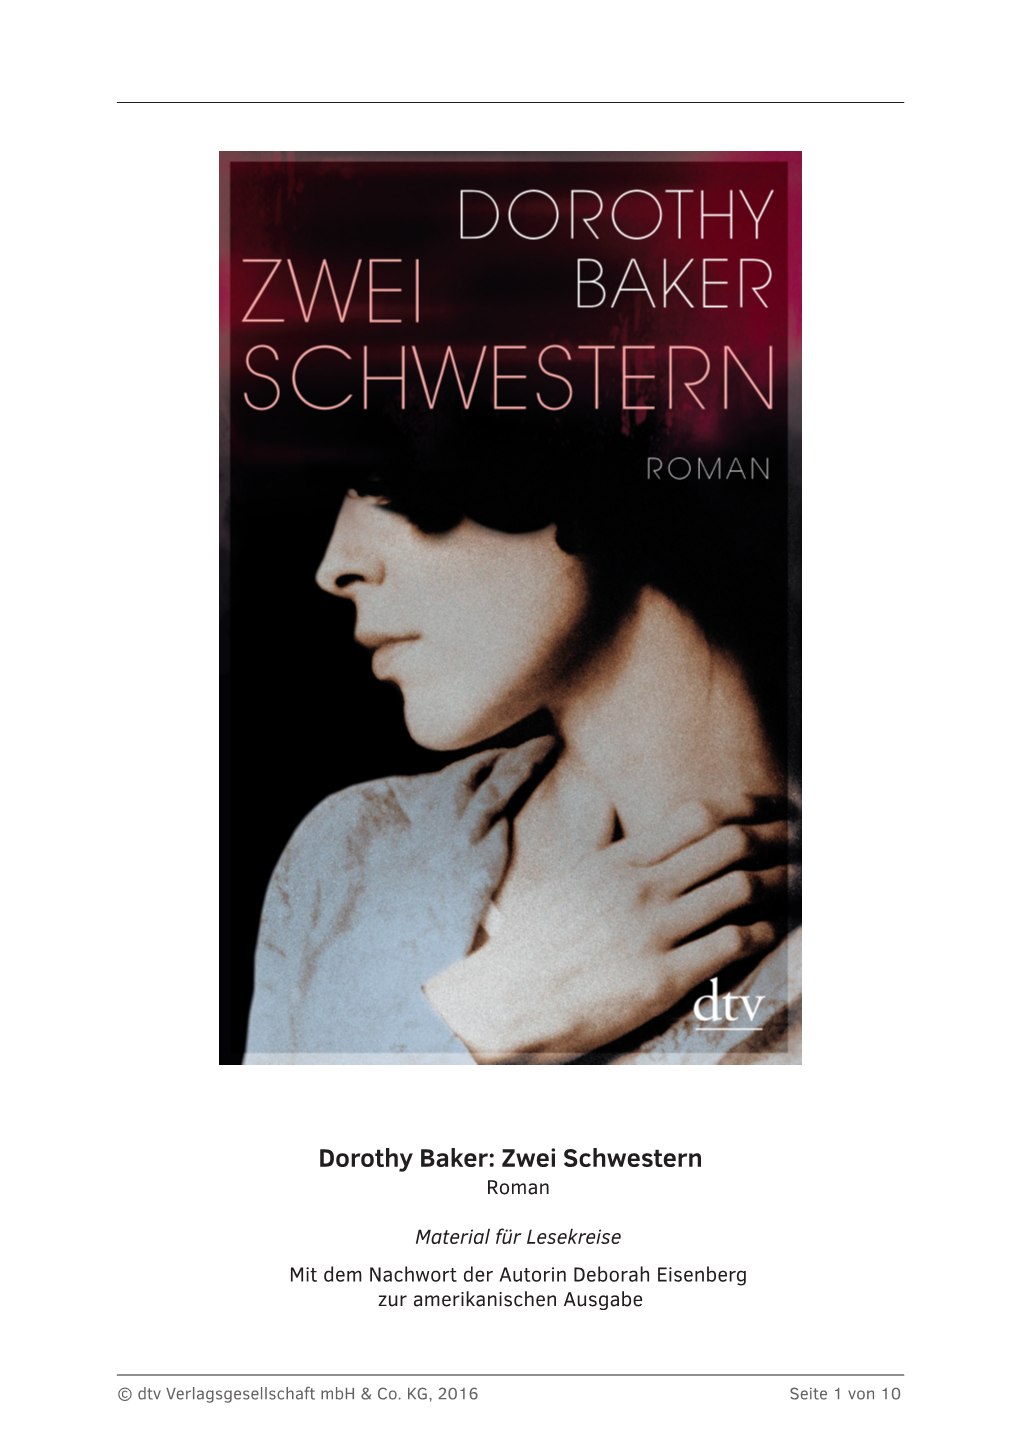 Dorothy Baker: Zwei Schwestern Roman